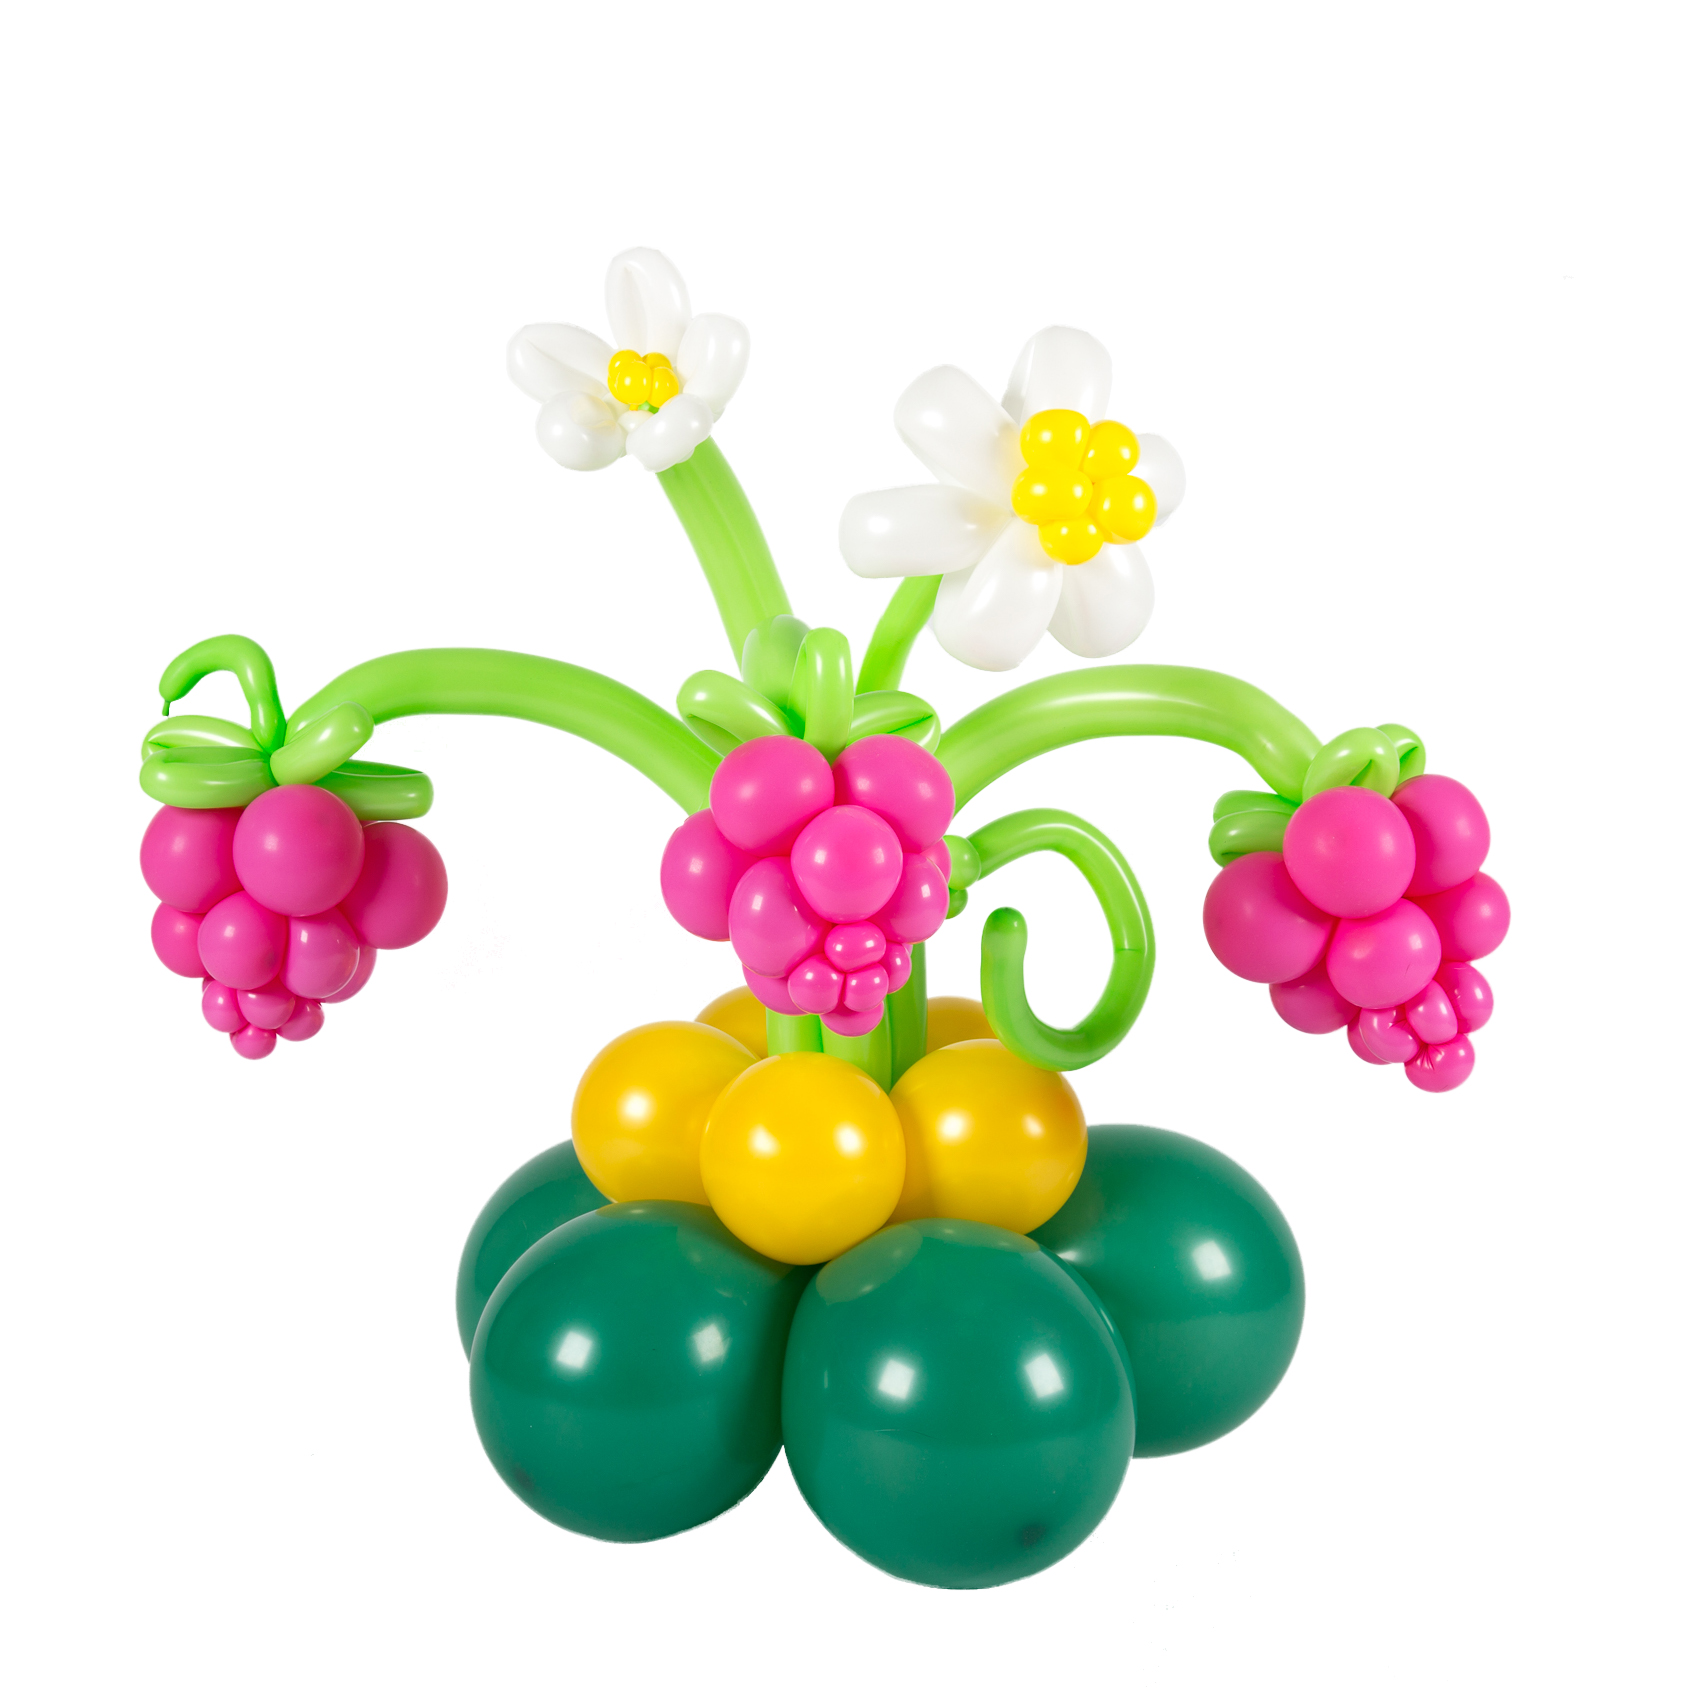 3 из воздушных шаров. Фигуры из воздушных шаров. Цветы из шаров. Ягоды из шаров. Цветочная композиция из шаров.